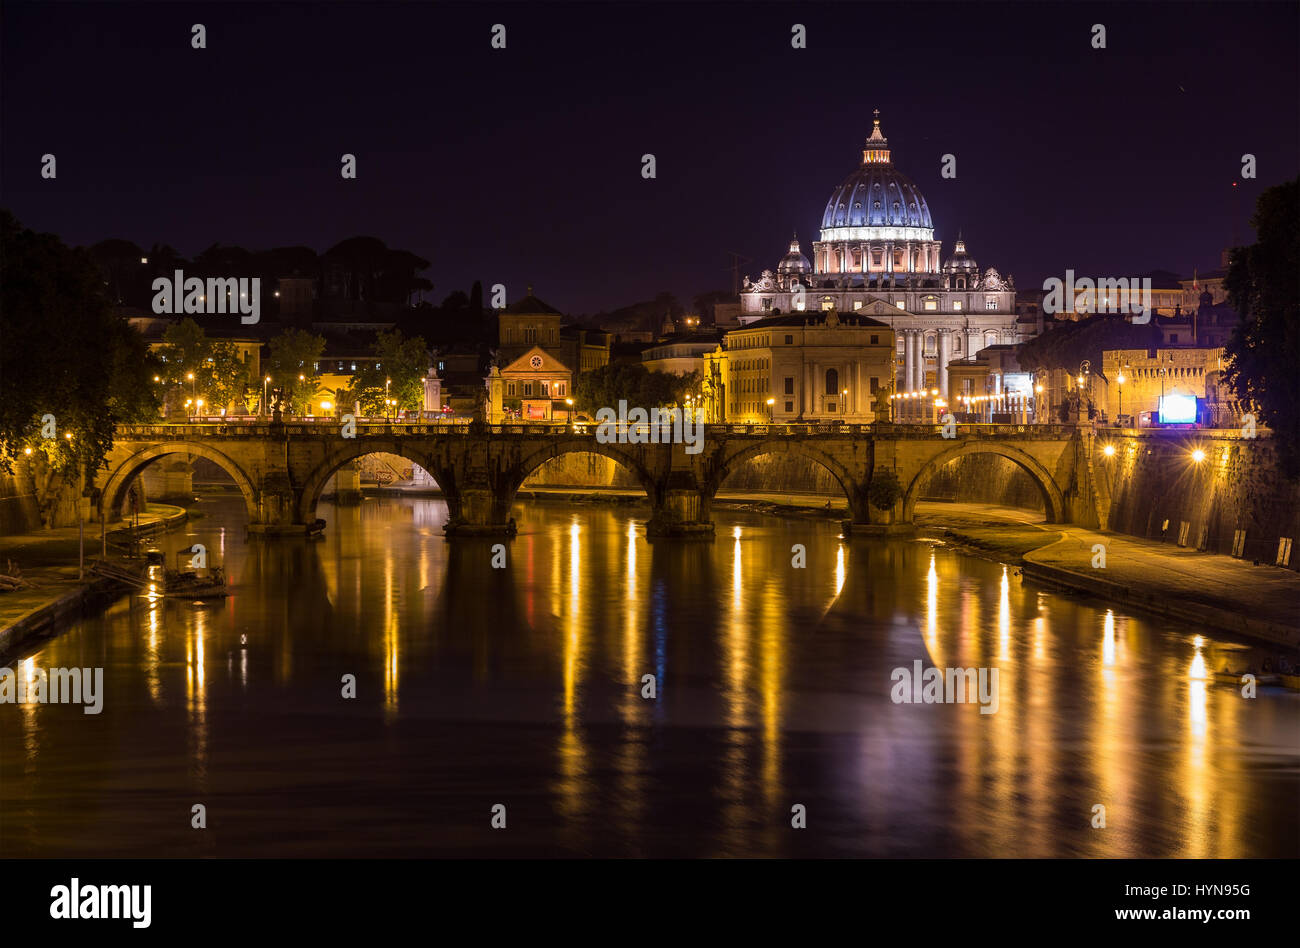 Night view of Basilica di San Pietro in Rome Stock Photo